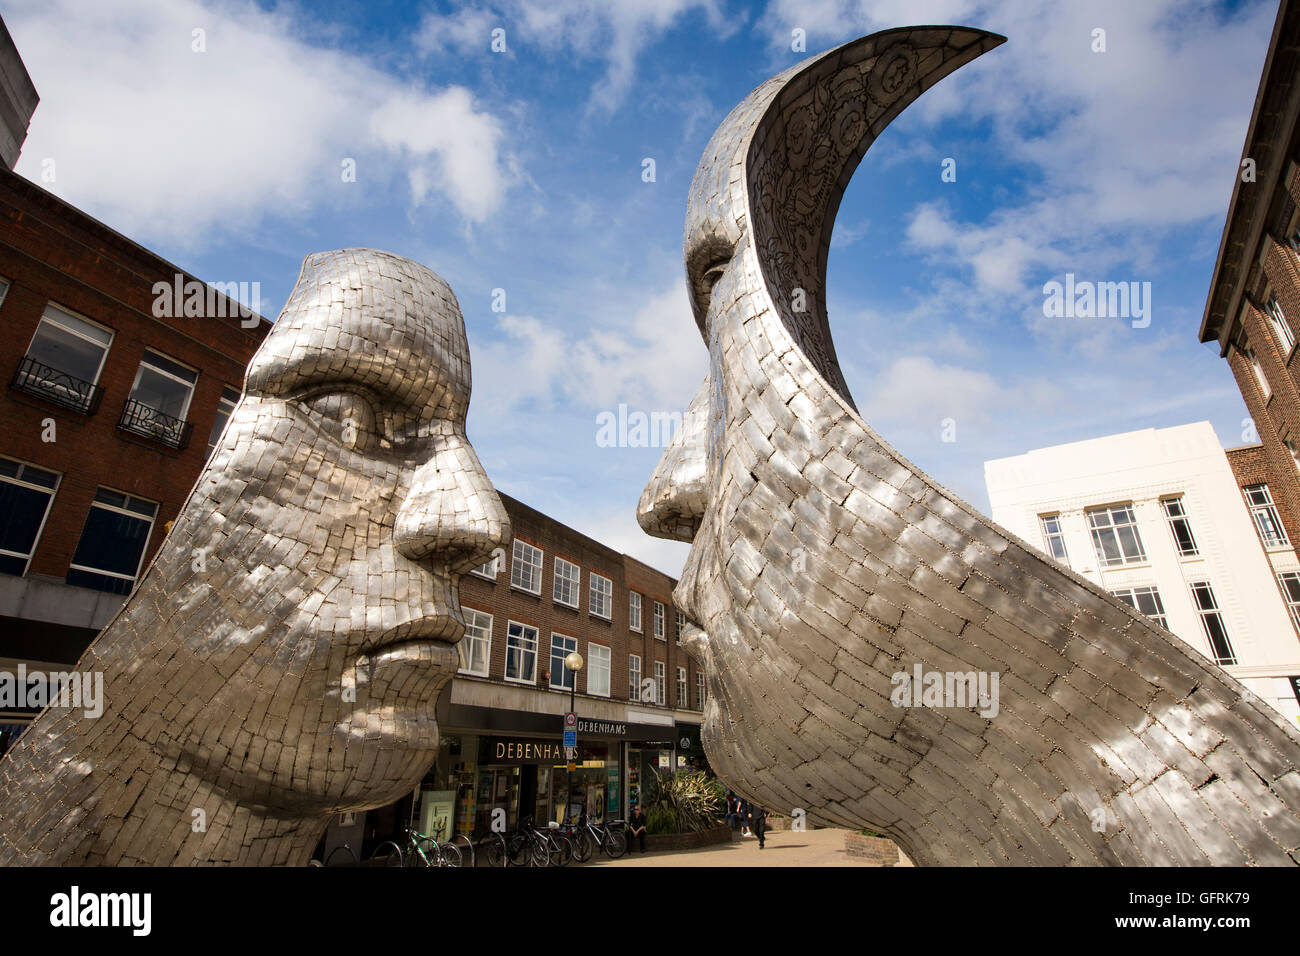 Royaume-uni, Angleterre, Bedford, Bedfordshire, reflets de Bedford, la sculpture à l'extérieur de Debenhams Banque D'Images